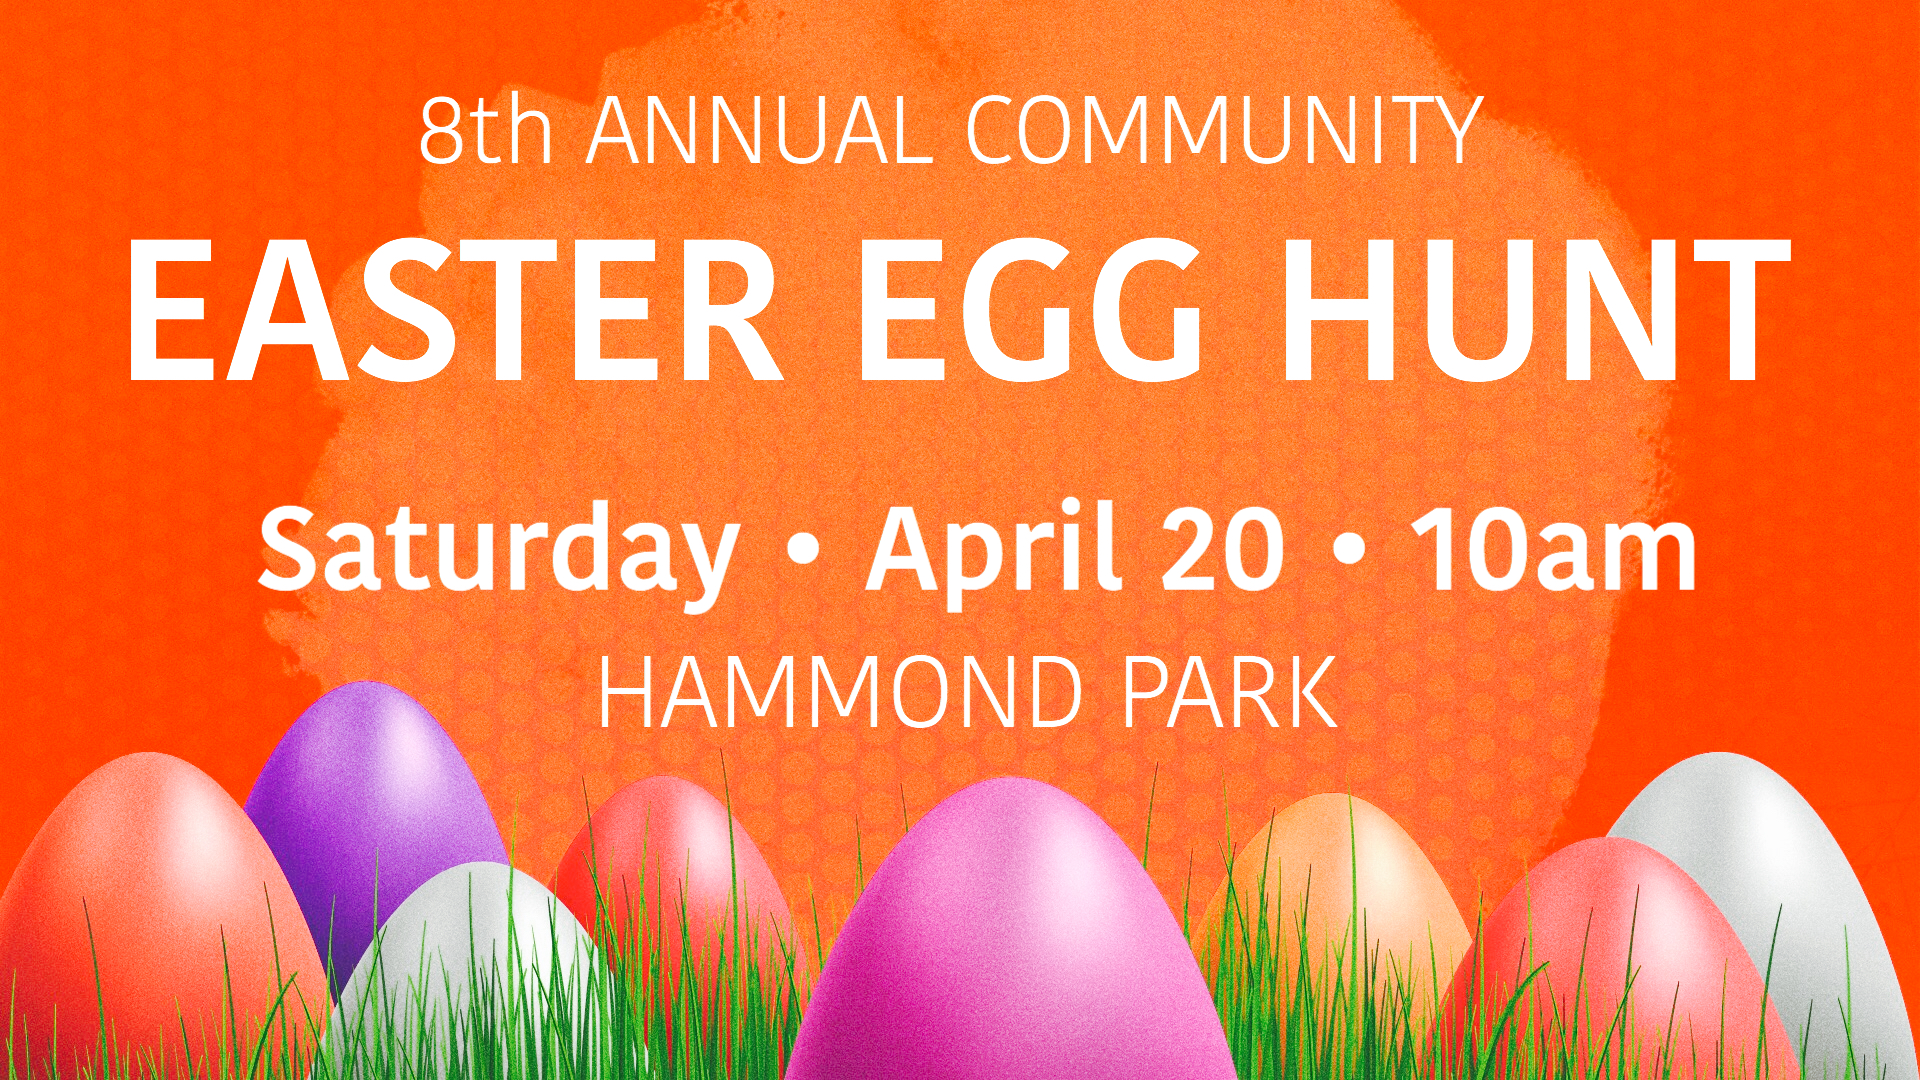 FREE – Community Easter Egg Hunt